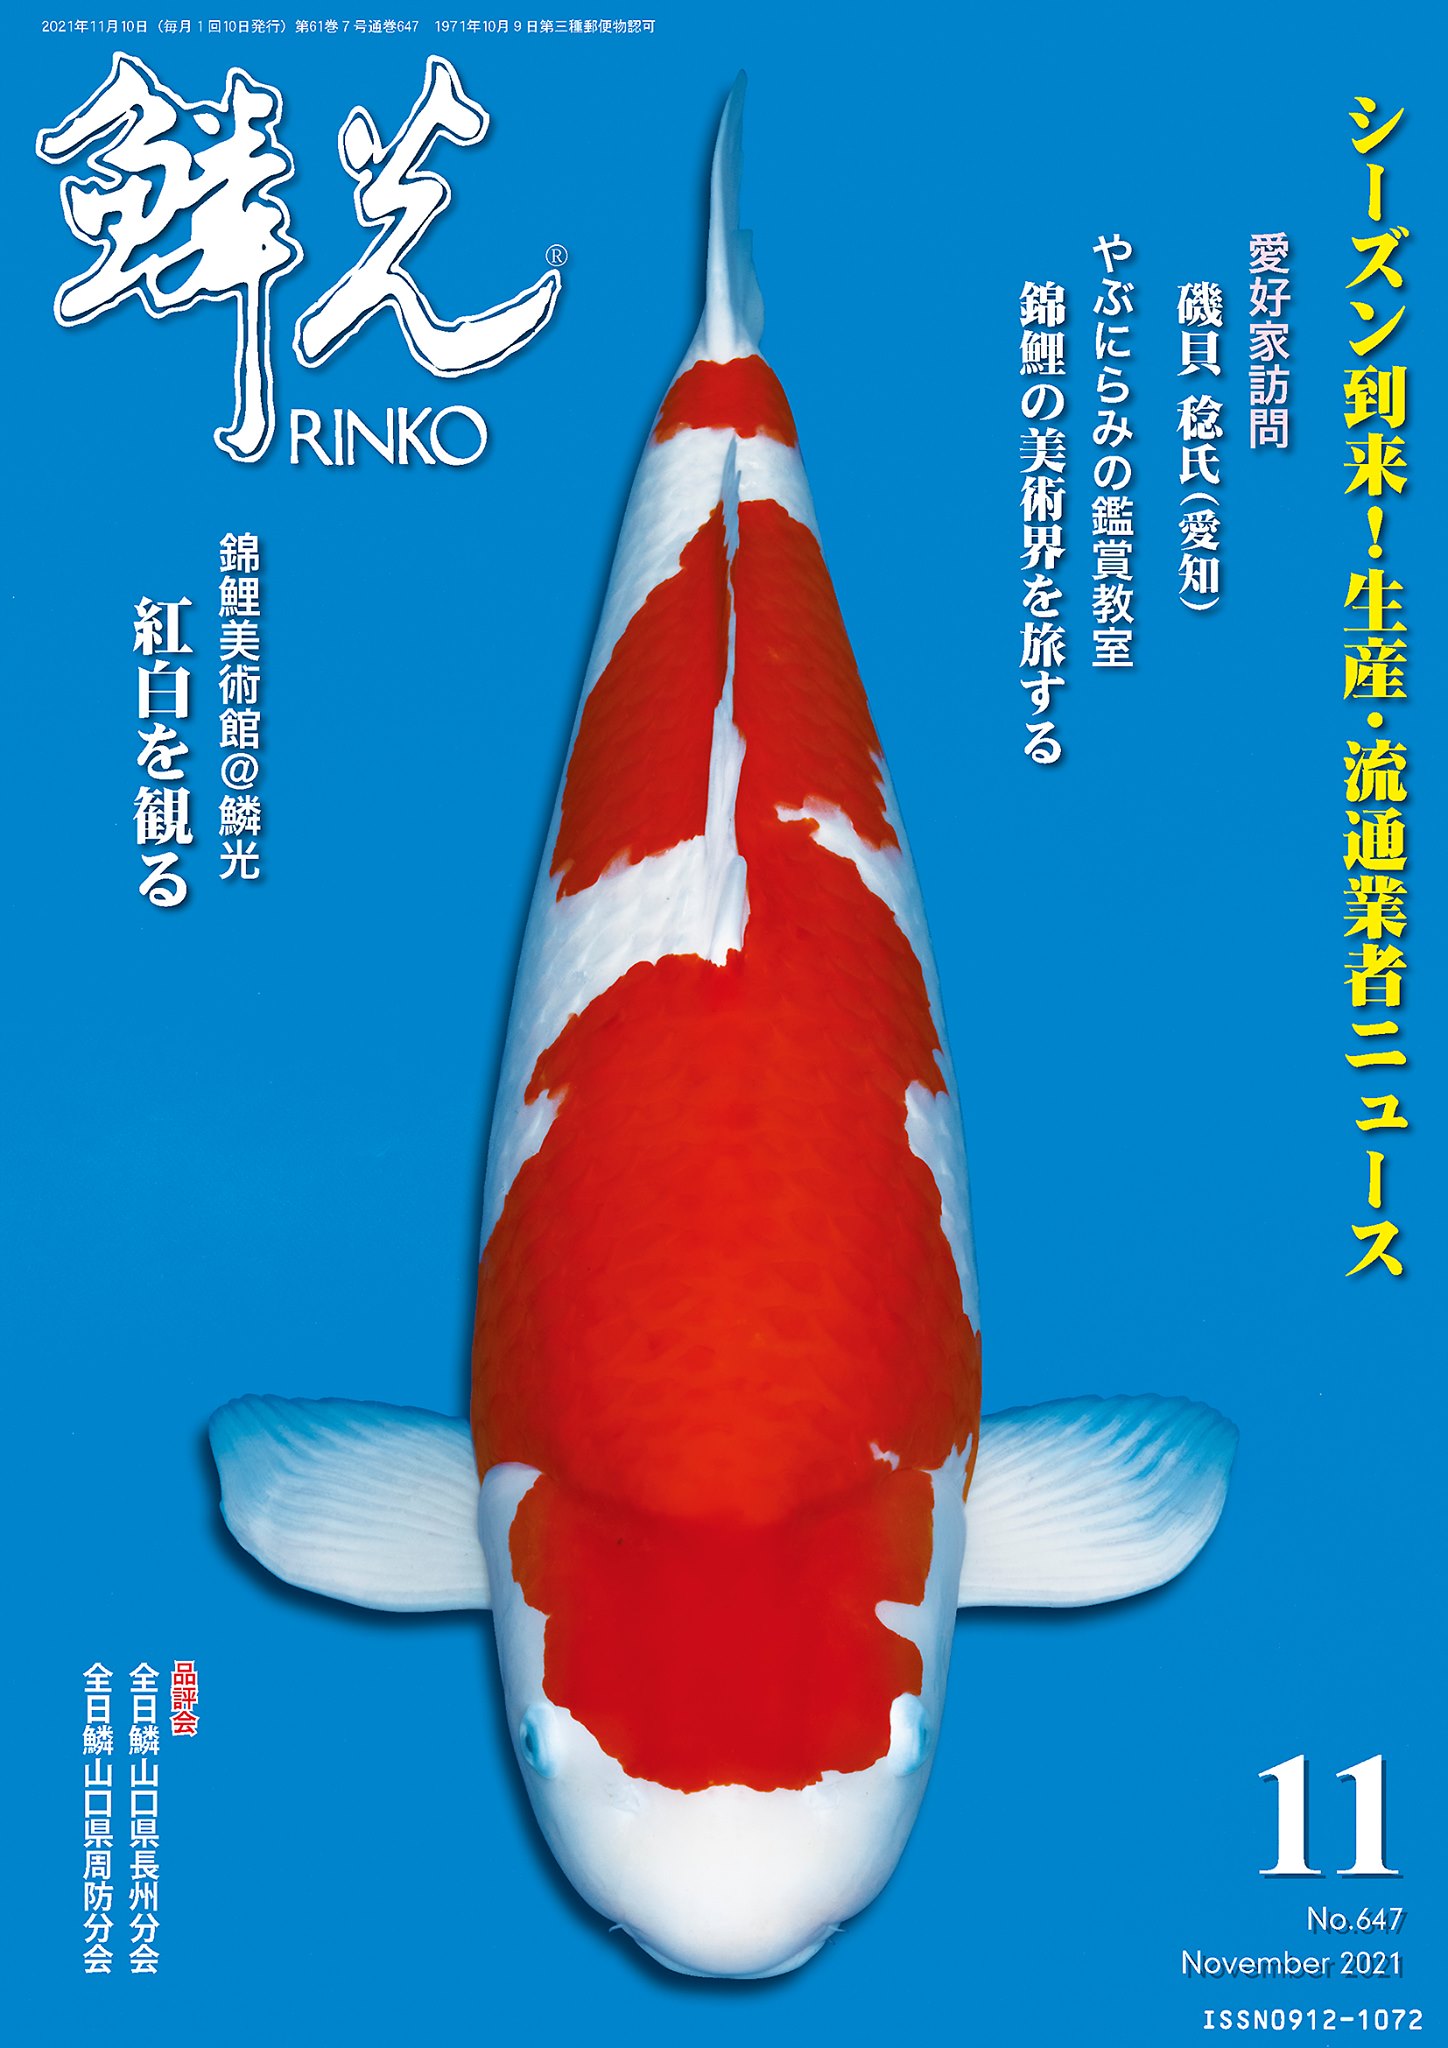 About RINKO Online - RINKO Online